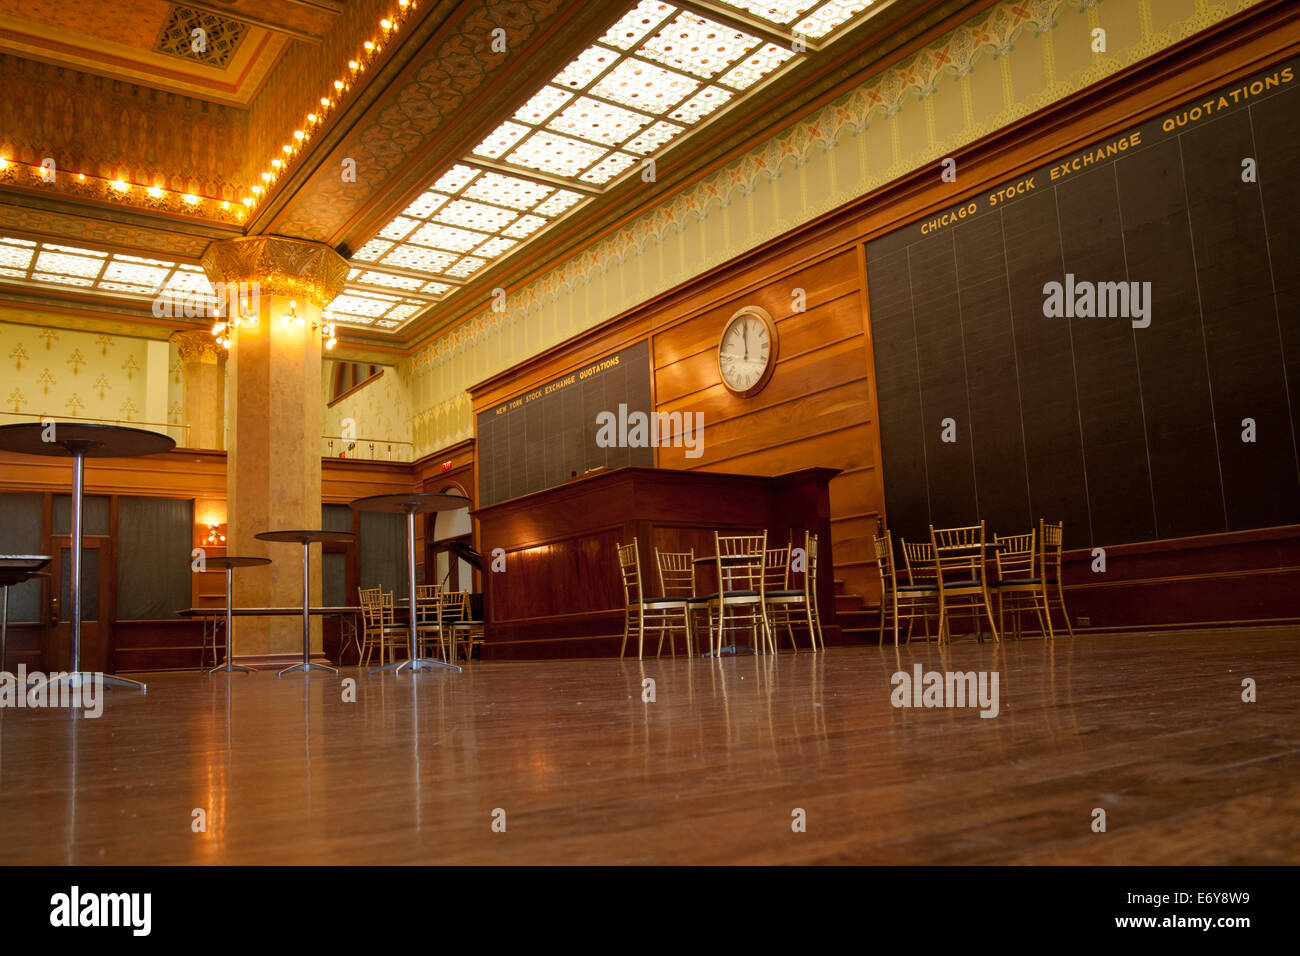 La reconstruction de la salle des marchés de la Bourse de Chicago à l'Art Institute de Chicago. Banque D'Images